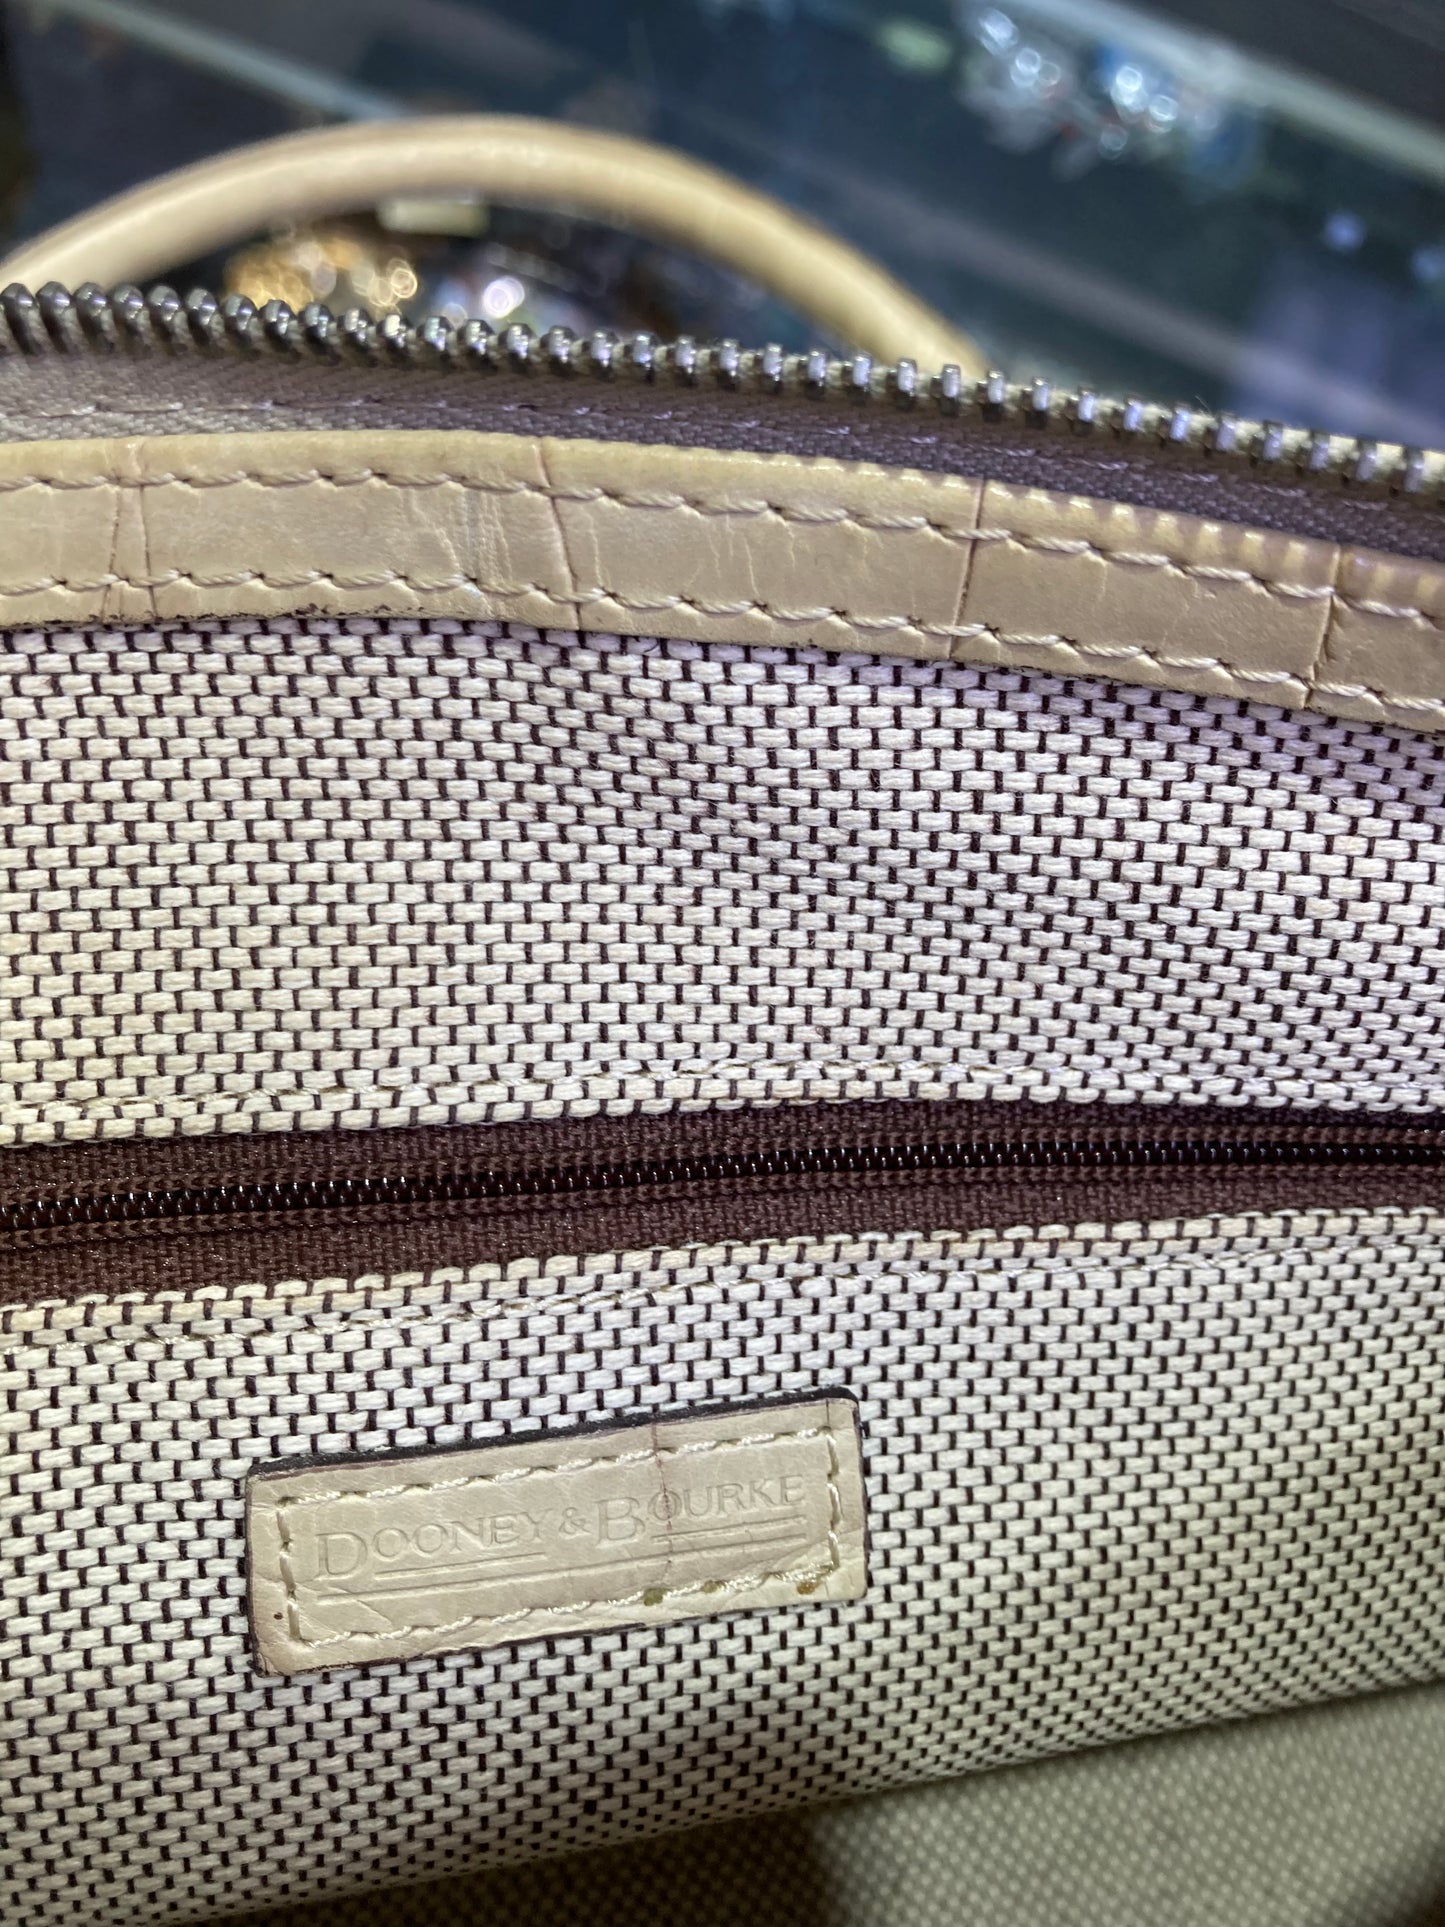 Dooney Bourke Designer Handbag leather beige color